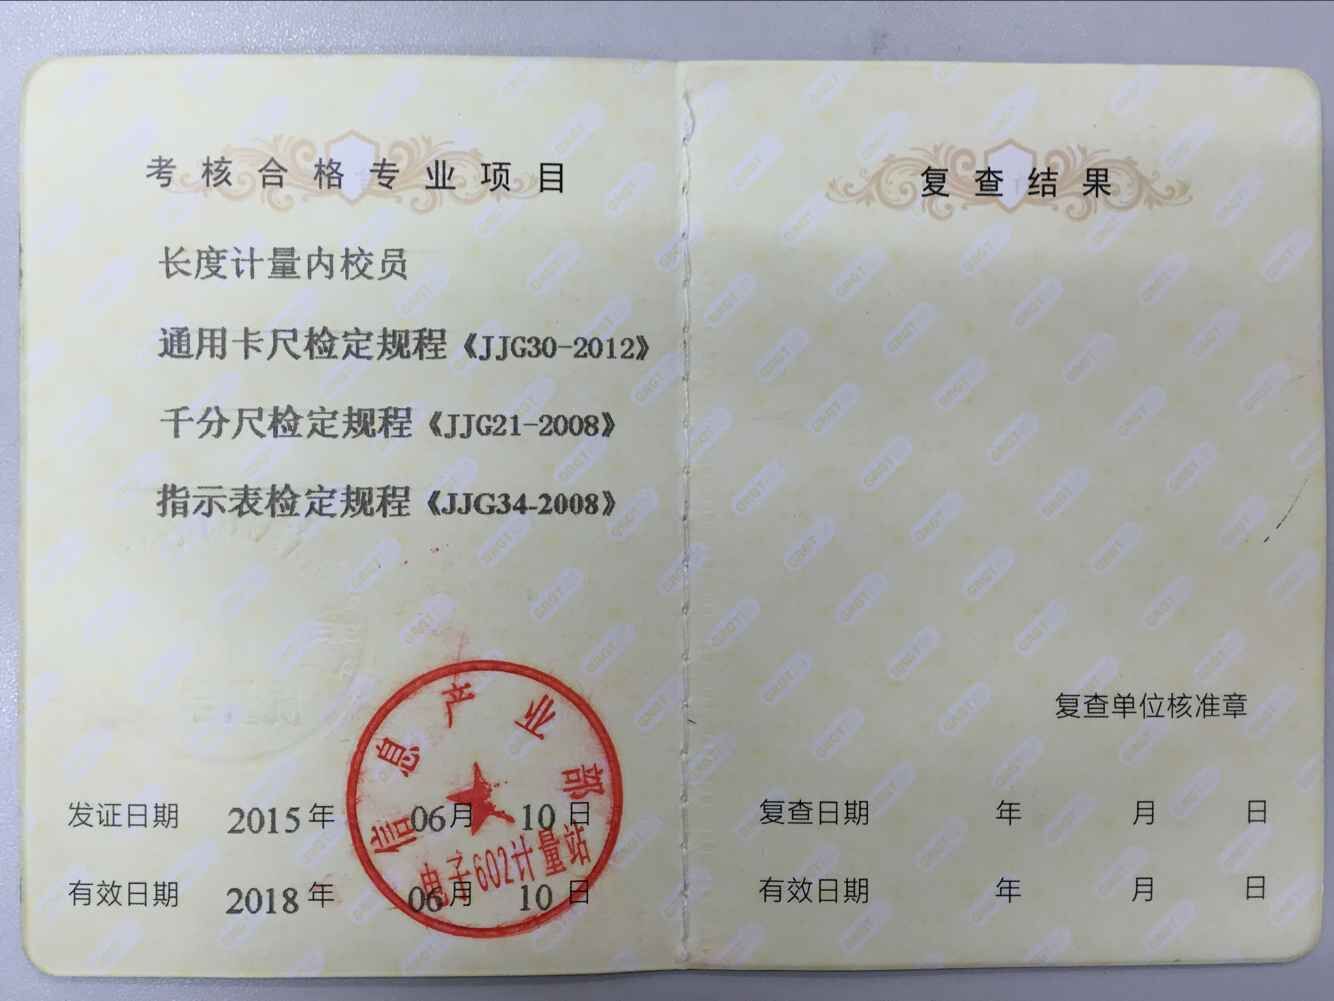 上海计量员校准员管理员内校员证书第三方审核资质培训